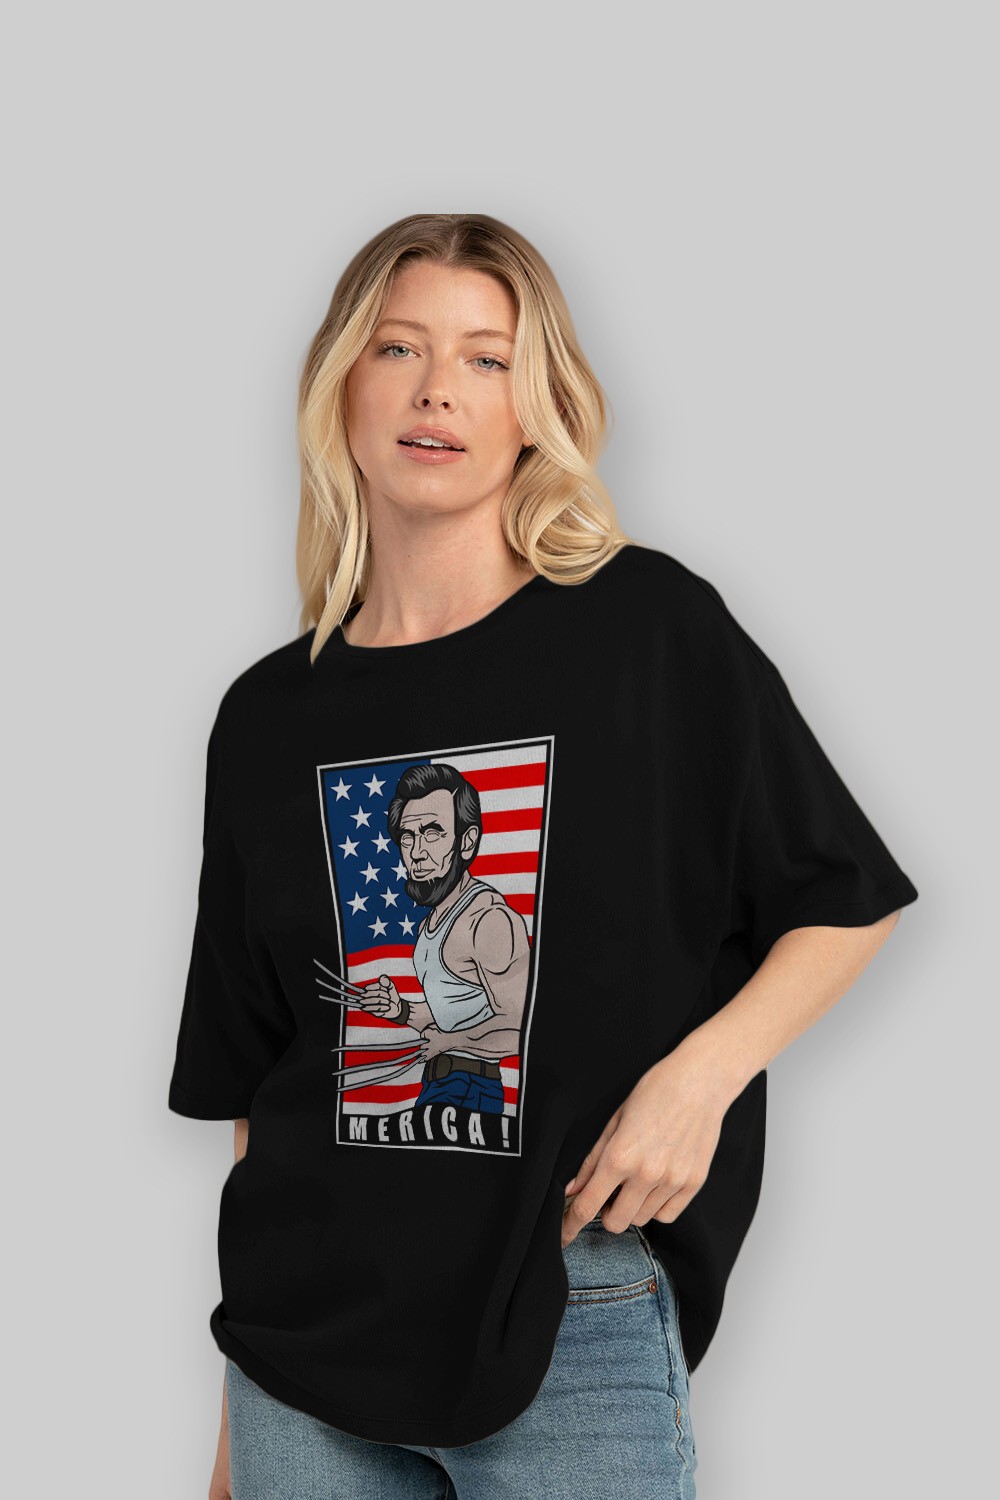 Wolverlincoln Ön Baskılı Oversize t-shirt Erkek Kadın Unisex %100 Pamuk tişort